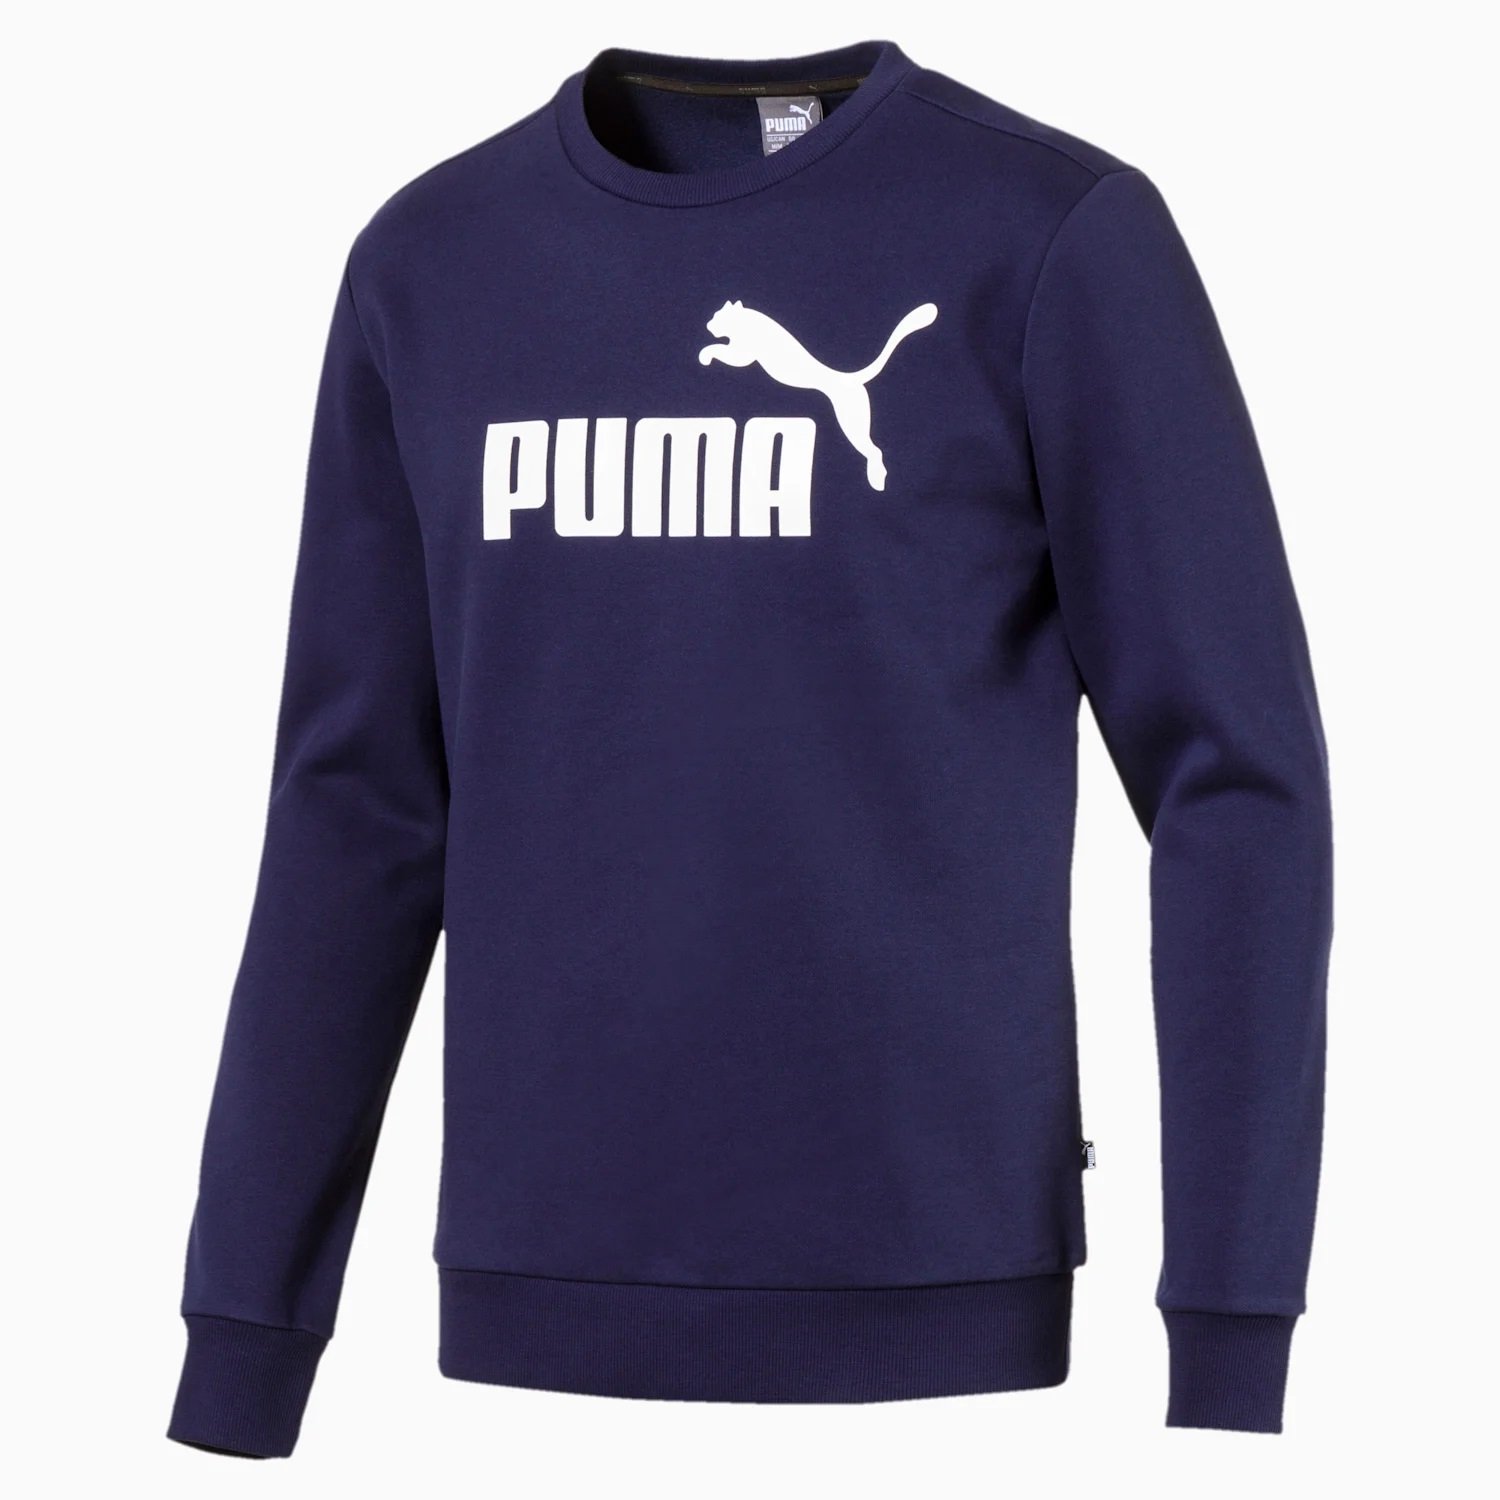 Essentlals 851747-06 Granatowy sports Sweatshirt | - Navy Puma - Kicks | Sport - - supplier of a Crew Fleece Sweat trusted footwear branded